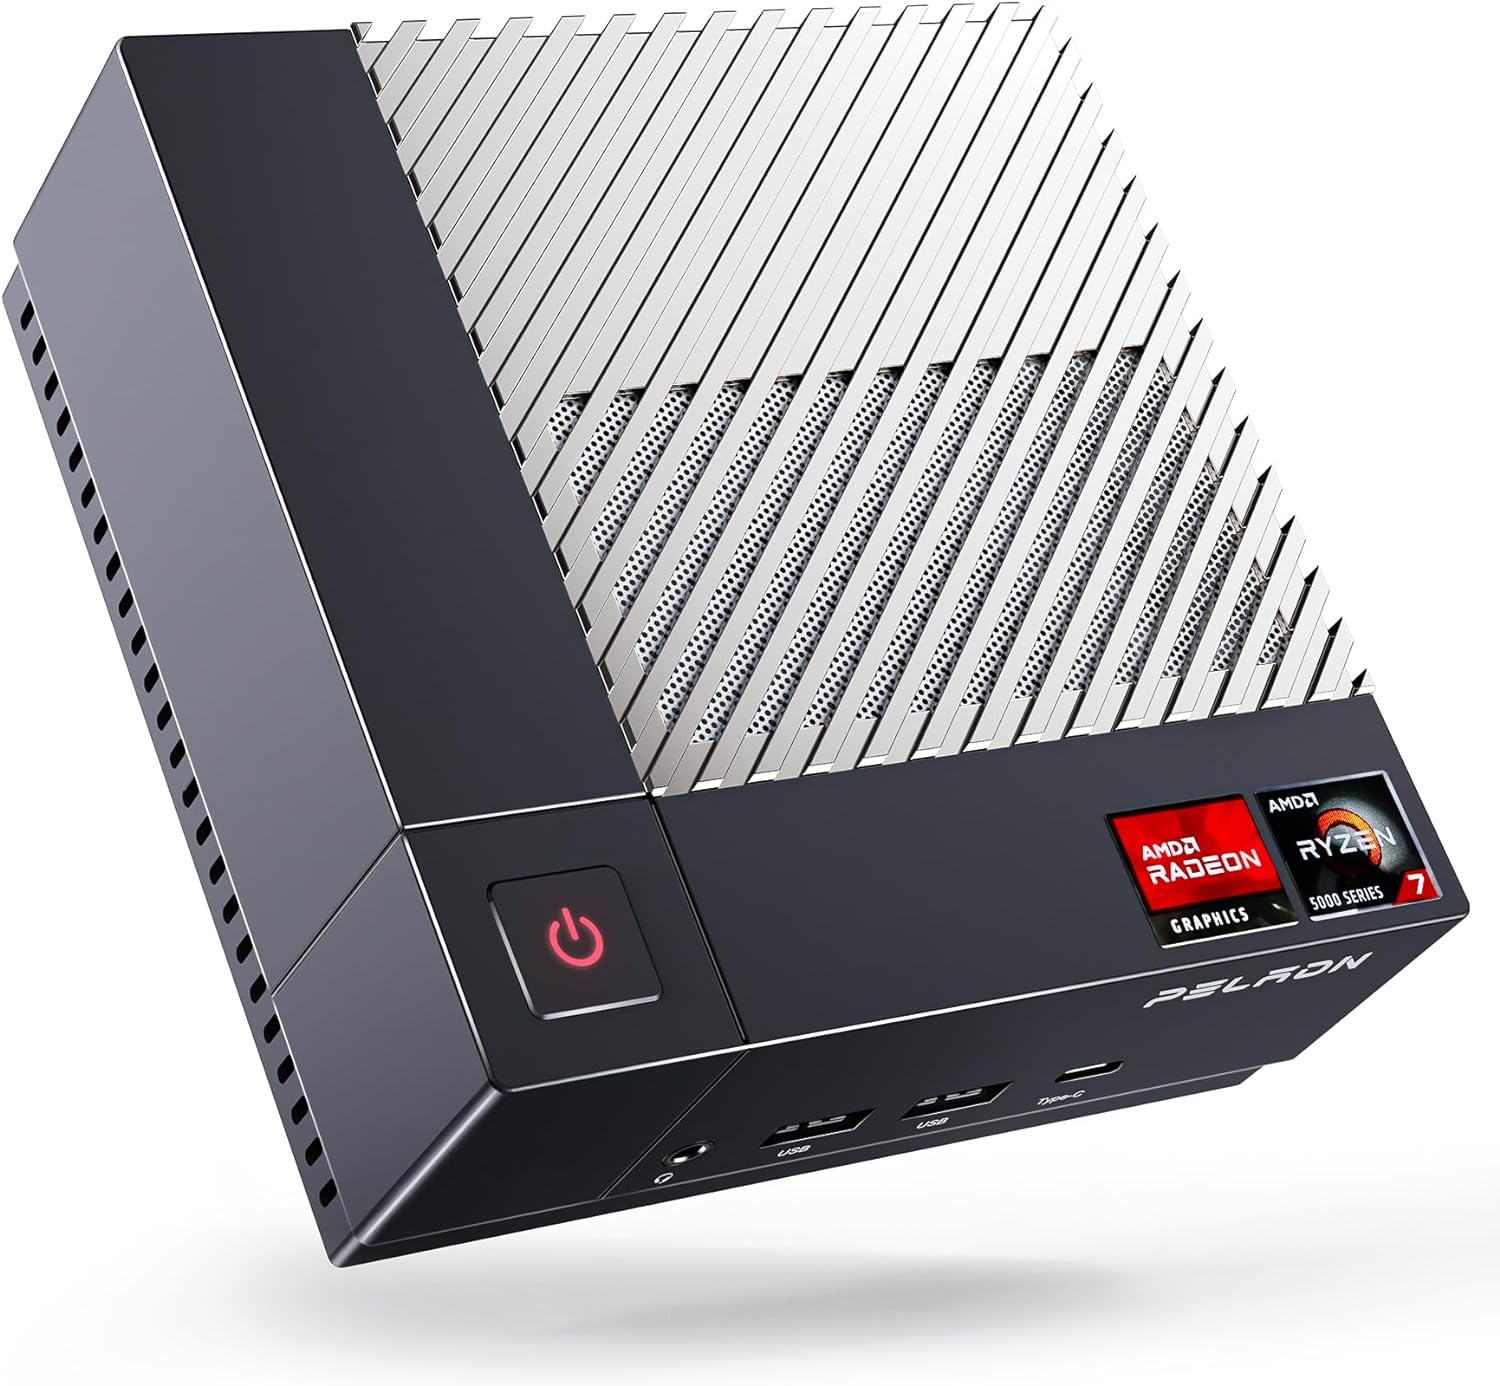 PELADN HA-2 Mini PC, AMD Ryzen 7 5800U (8C/16T up to 4.4Ghz), 16GB DDR4, 512GB NVME SSD, Win 11 Pro, 4K@60Hz HDMI, WiFi 5, Dual LAN Bluetooth 4.2, Compact Desktop Computers.